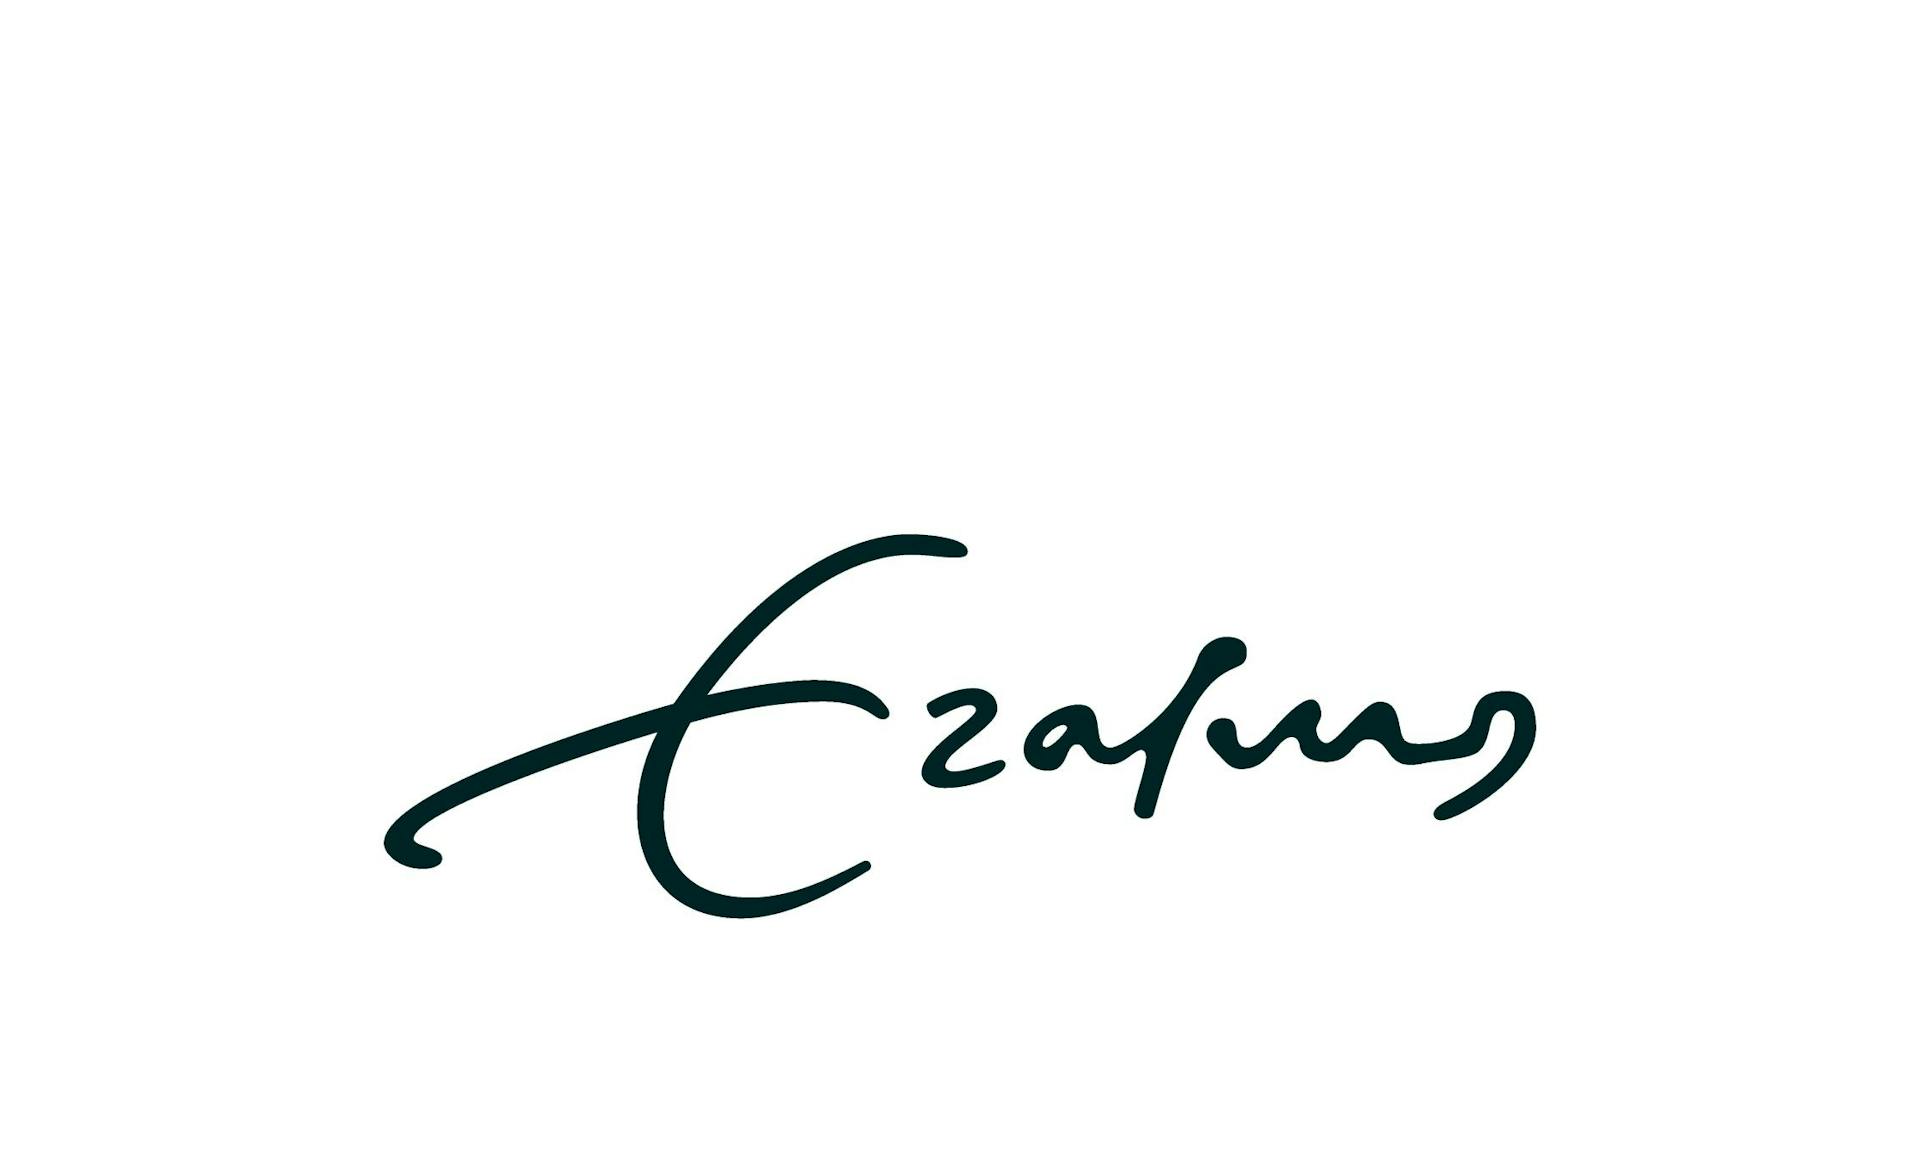 Het logo van de Erasmus Universiteit. Dit is het woord Erasmus geschreven in het handschrift van Erasmus zelf. Zo laat de universiteit zien dat ze weten waar ze vandaan komen en wie ze zijn. Verder komen deze kleuren ook terug in hun andere communicatie.